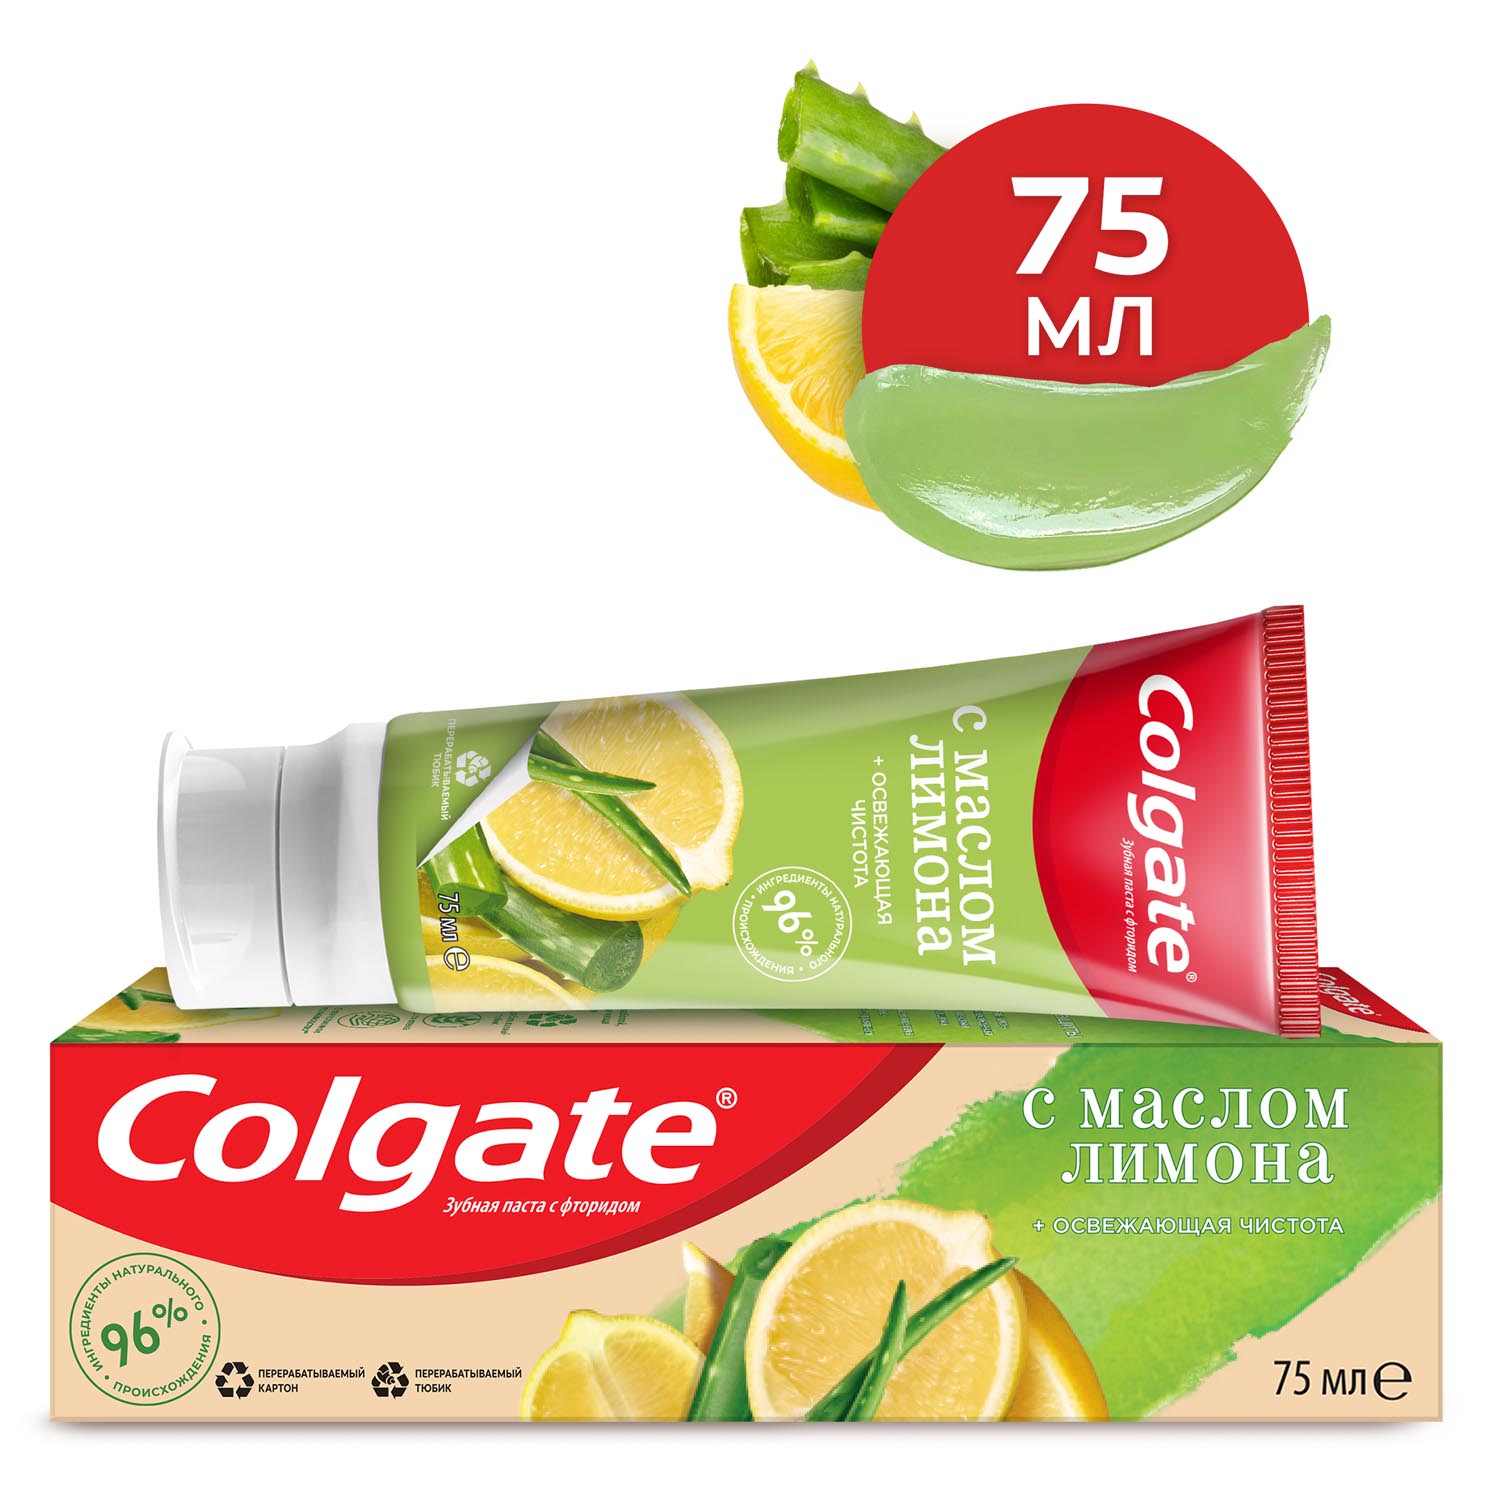 Зубная паста Colgate Naturals Освежающая чистота с маслом лимона, с фторидом, 75 мл colgate освежающая зубная паста макс фреш взрывная мята